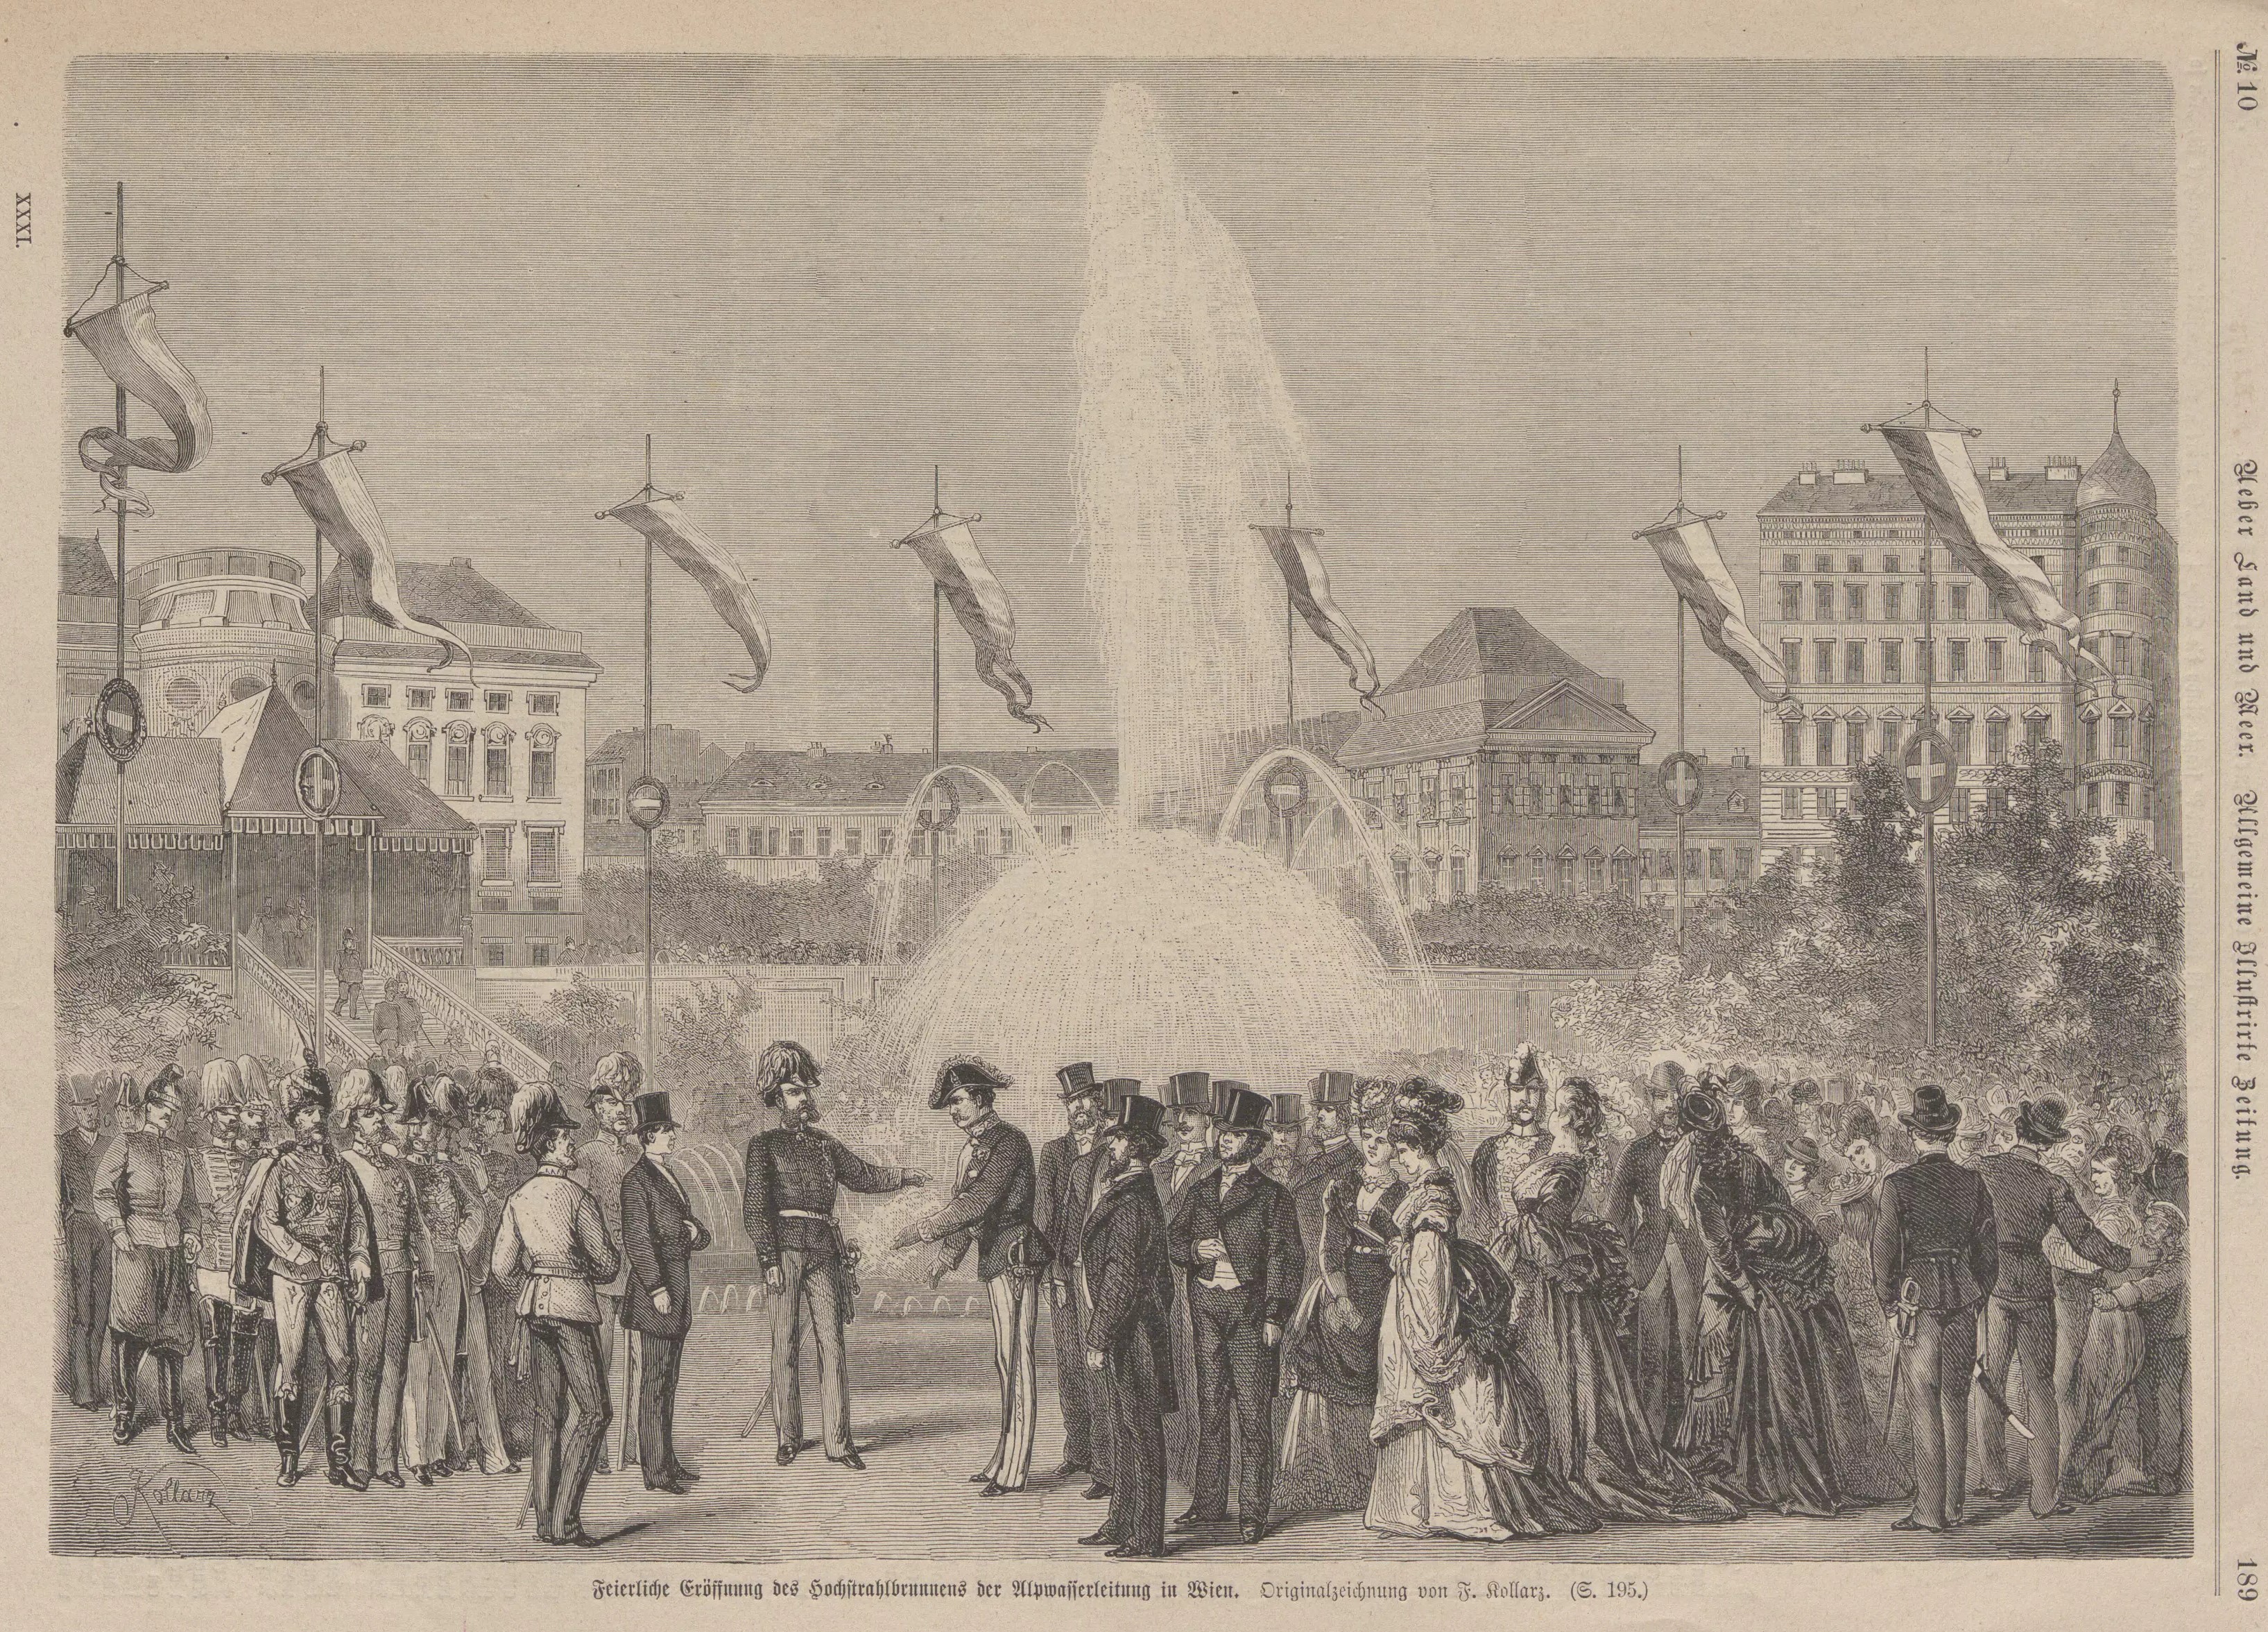 Hochstrahlbrunnen zur Eröffnung der Wiener Hochquell-Wasserleitung 24.10.1873